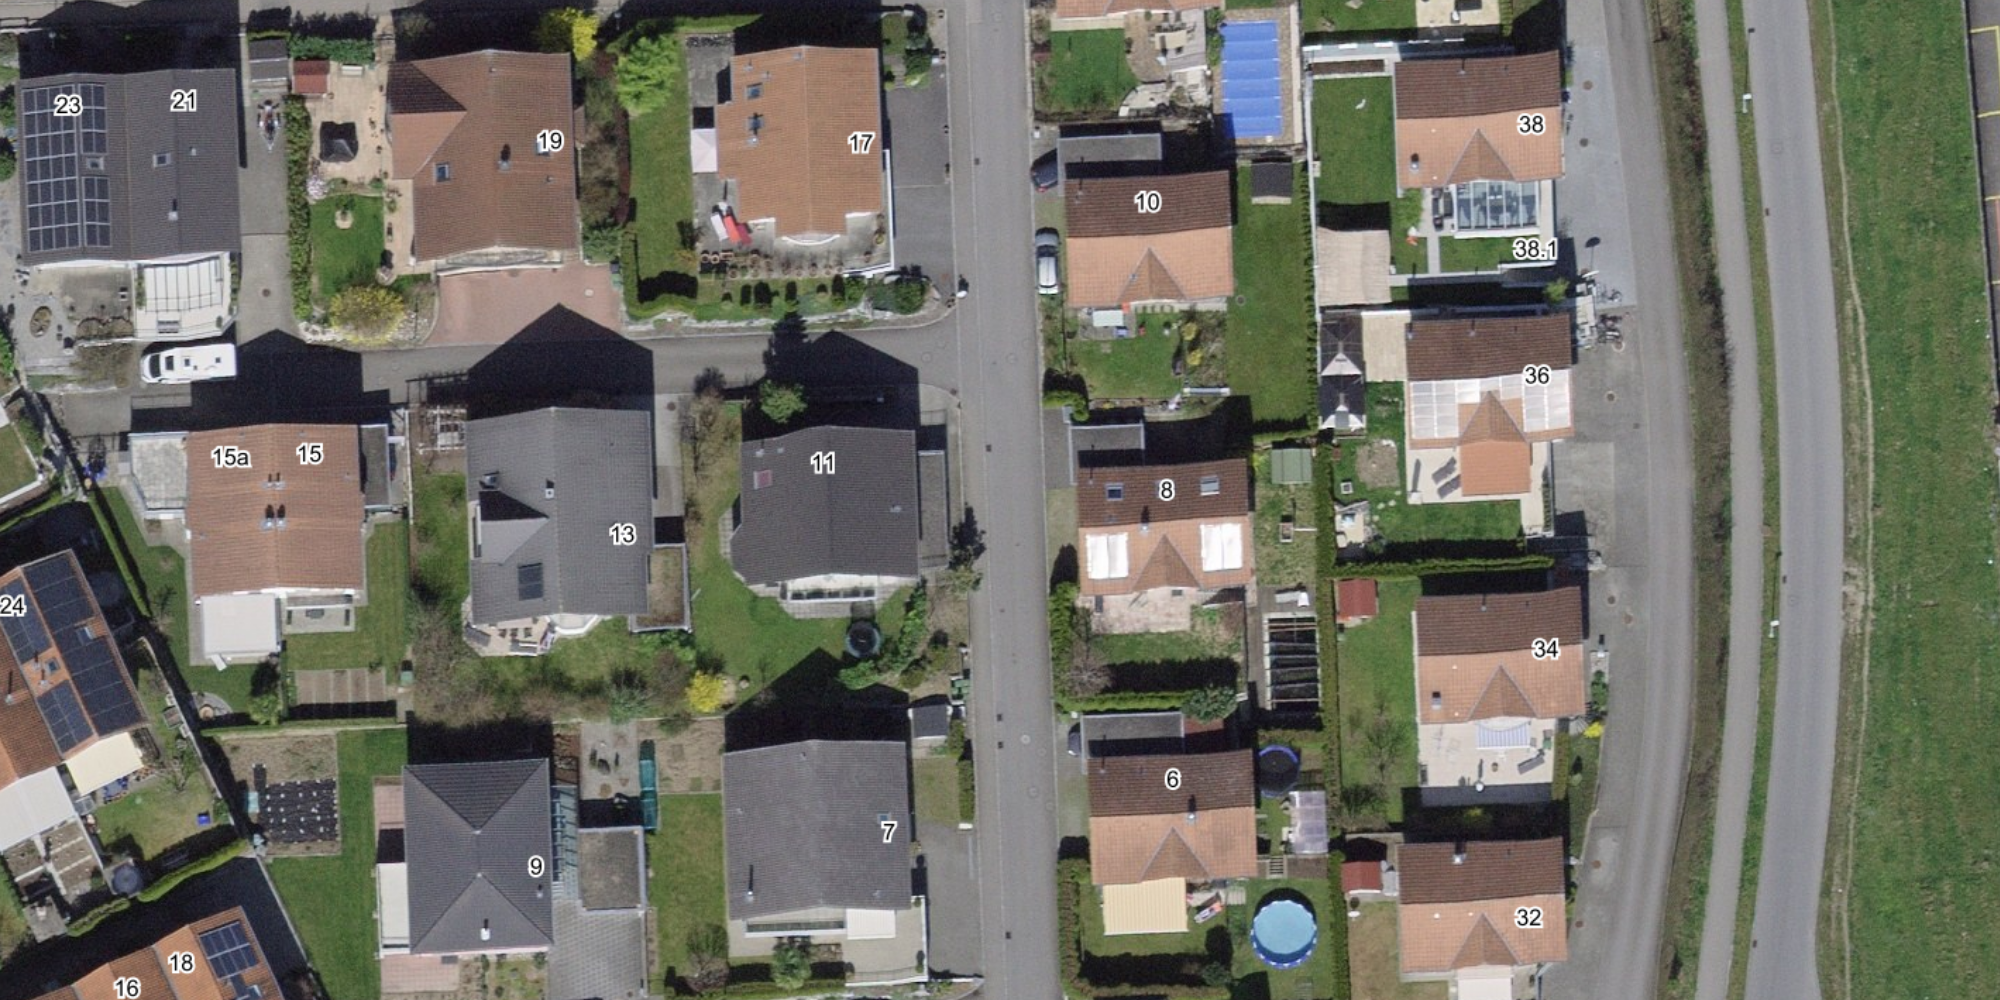 Das Bild zeigt eine Luftaufnahme von einem Einfamilienhaus Quartier, mit den zugehörigen Gebäudeadressen.